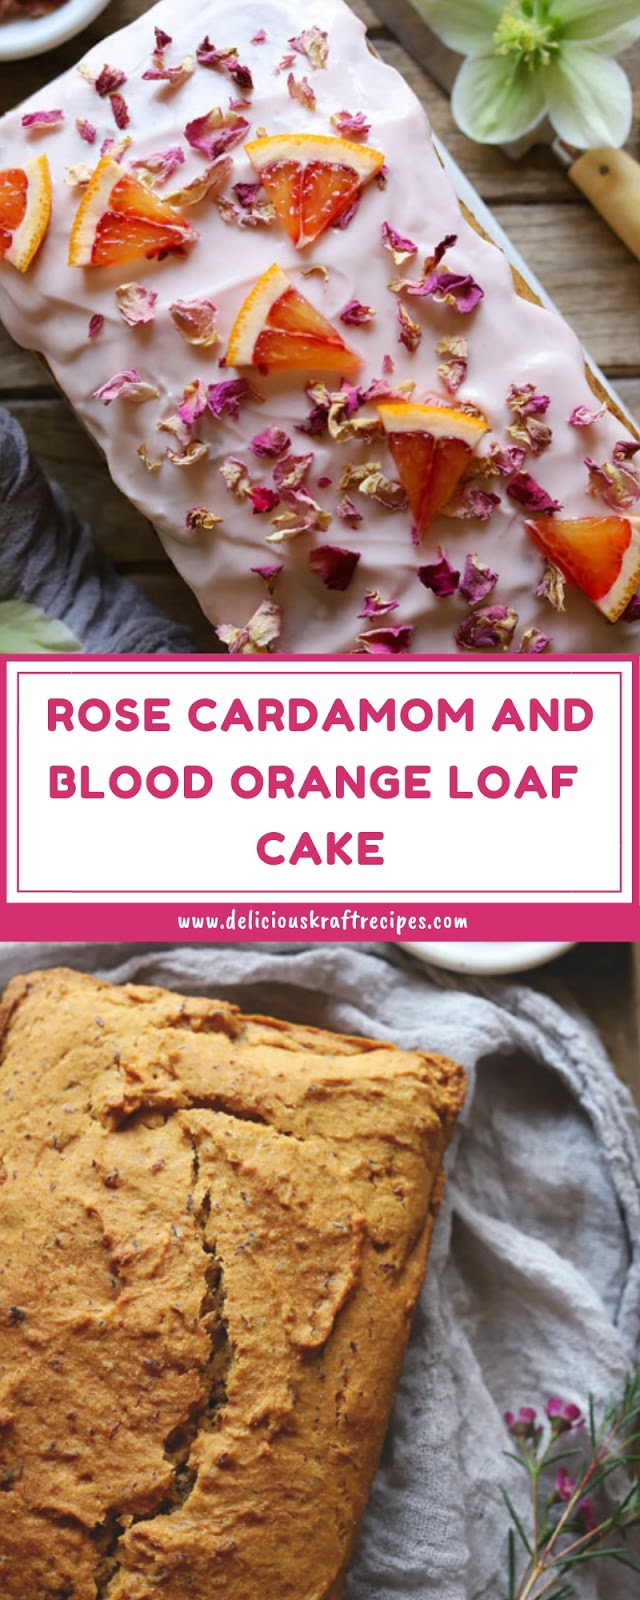 ROSE CARDAMOM AND BLOOD ORANGE LOAF CAKE